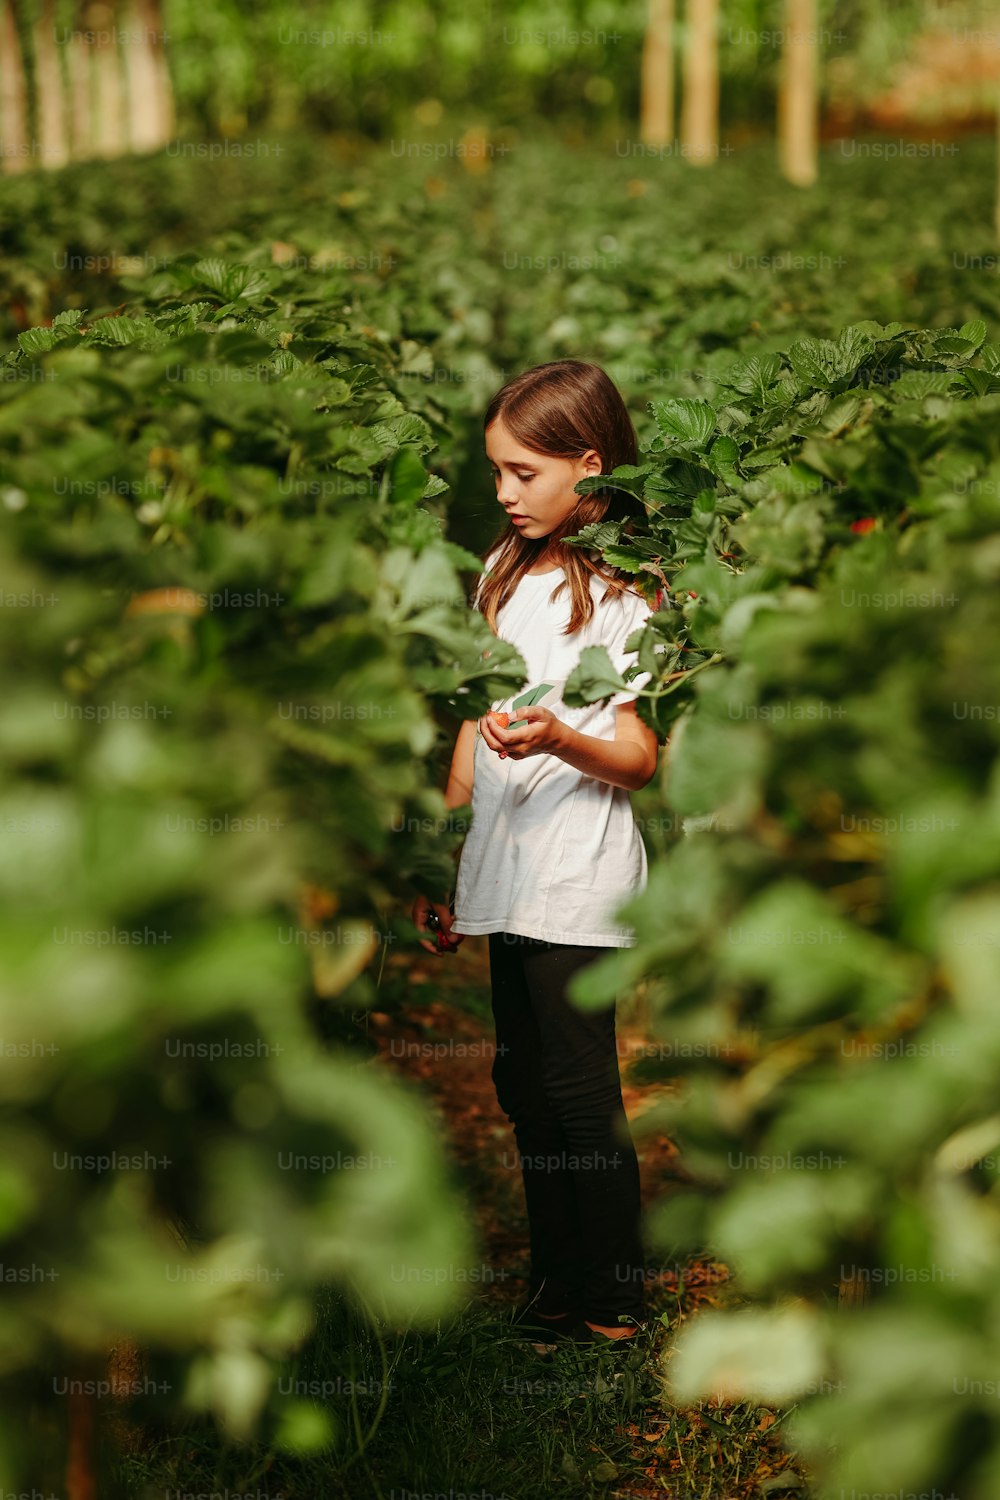 녹색 식물 밭에 서 있는 어린 소녀